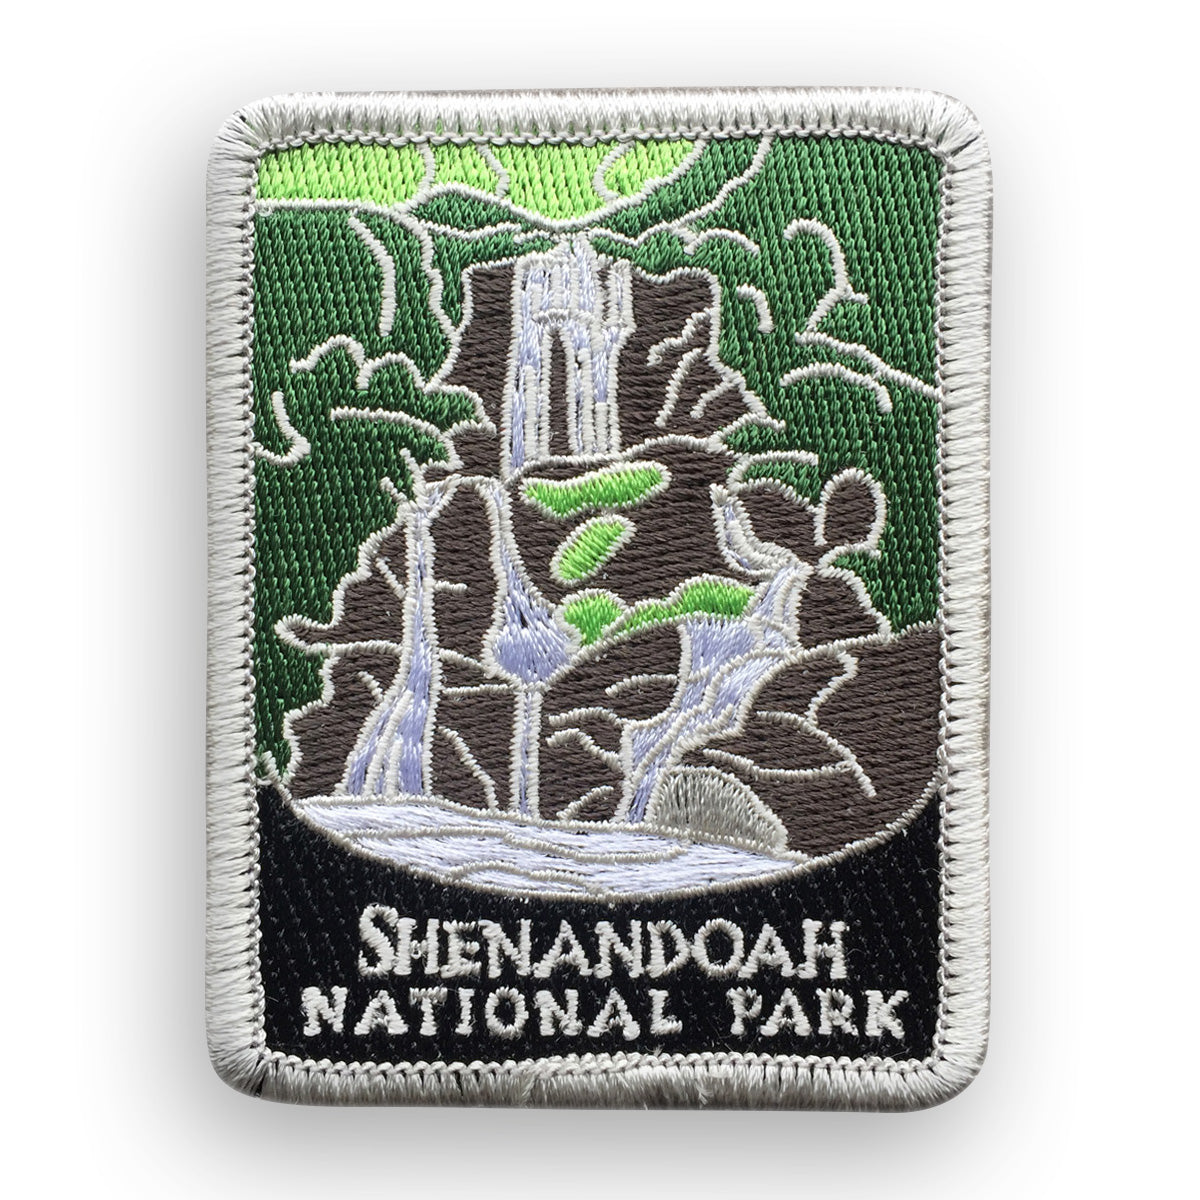 Shenandoah National Park Traveler Patch